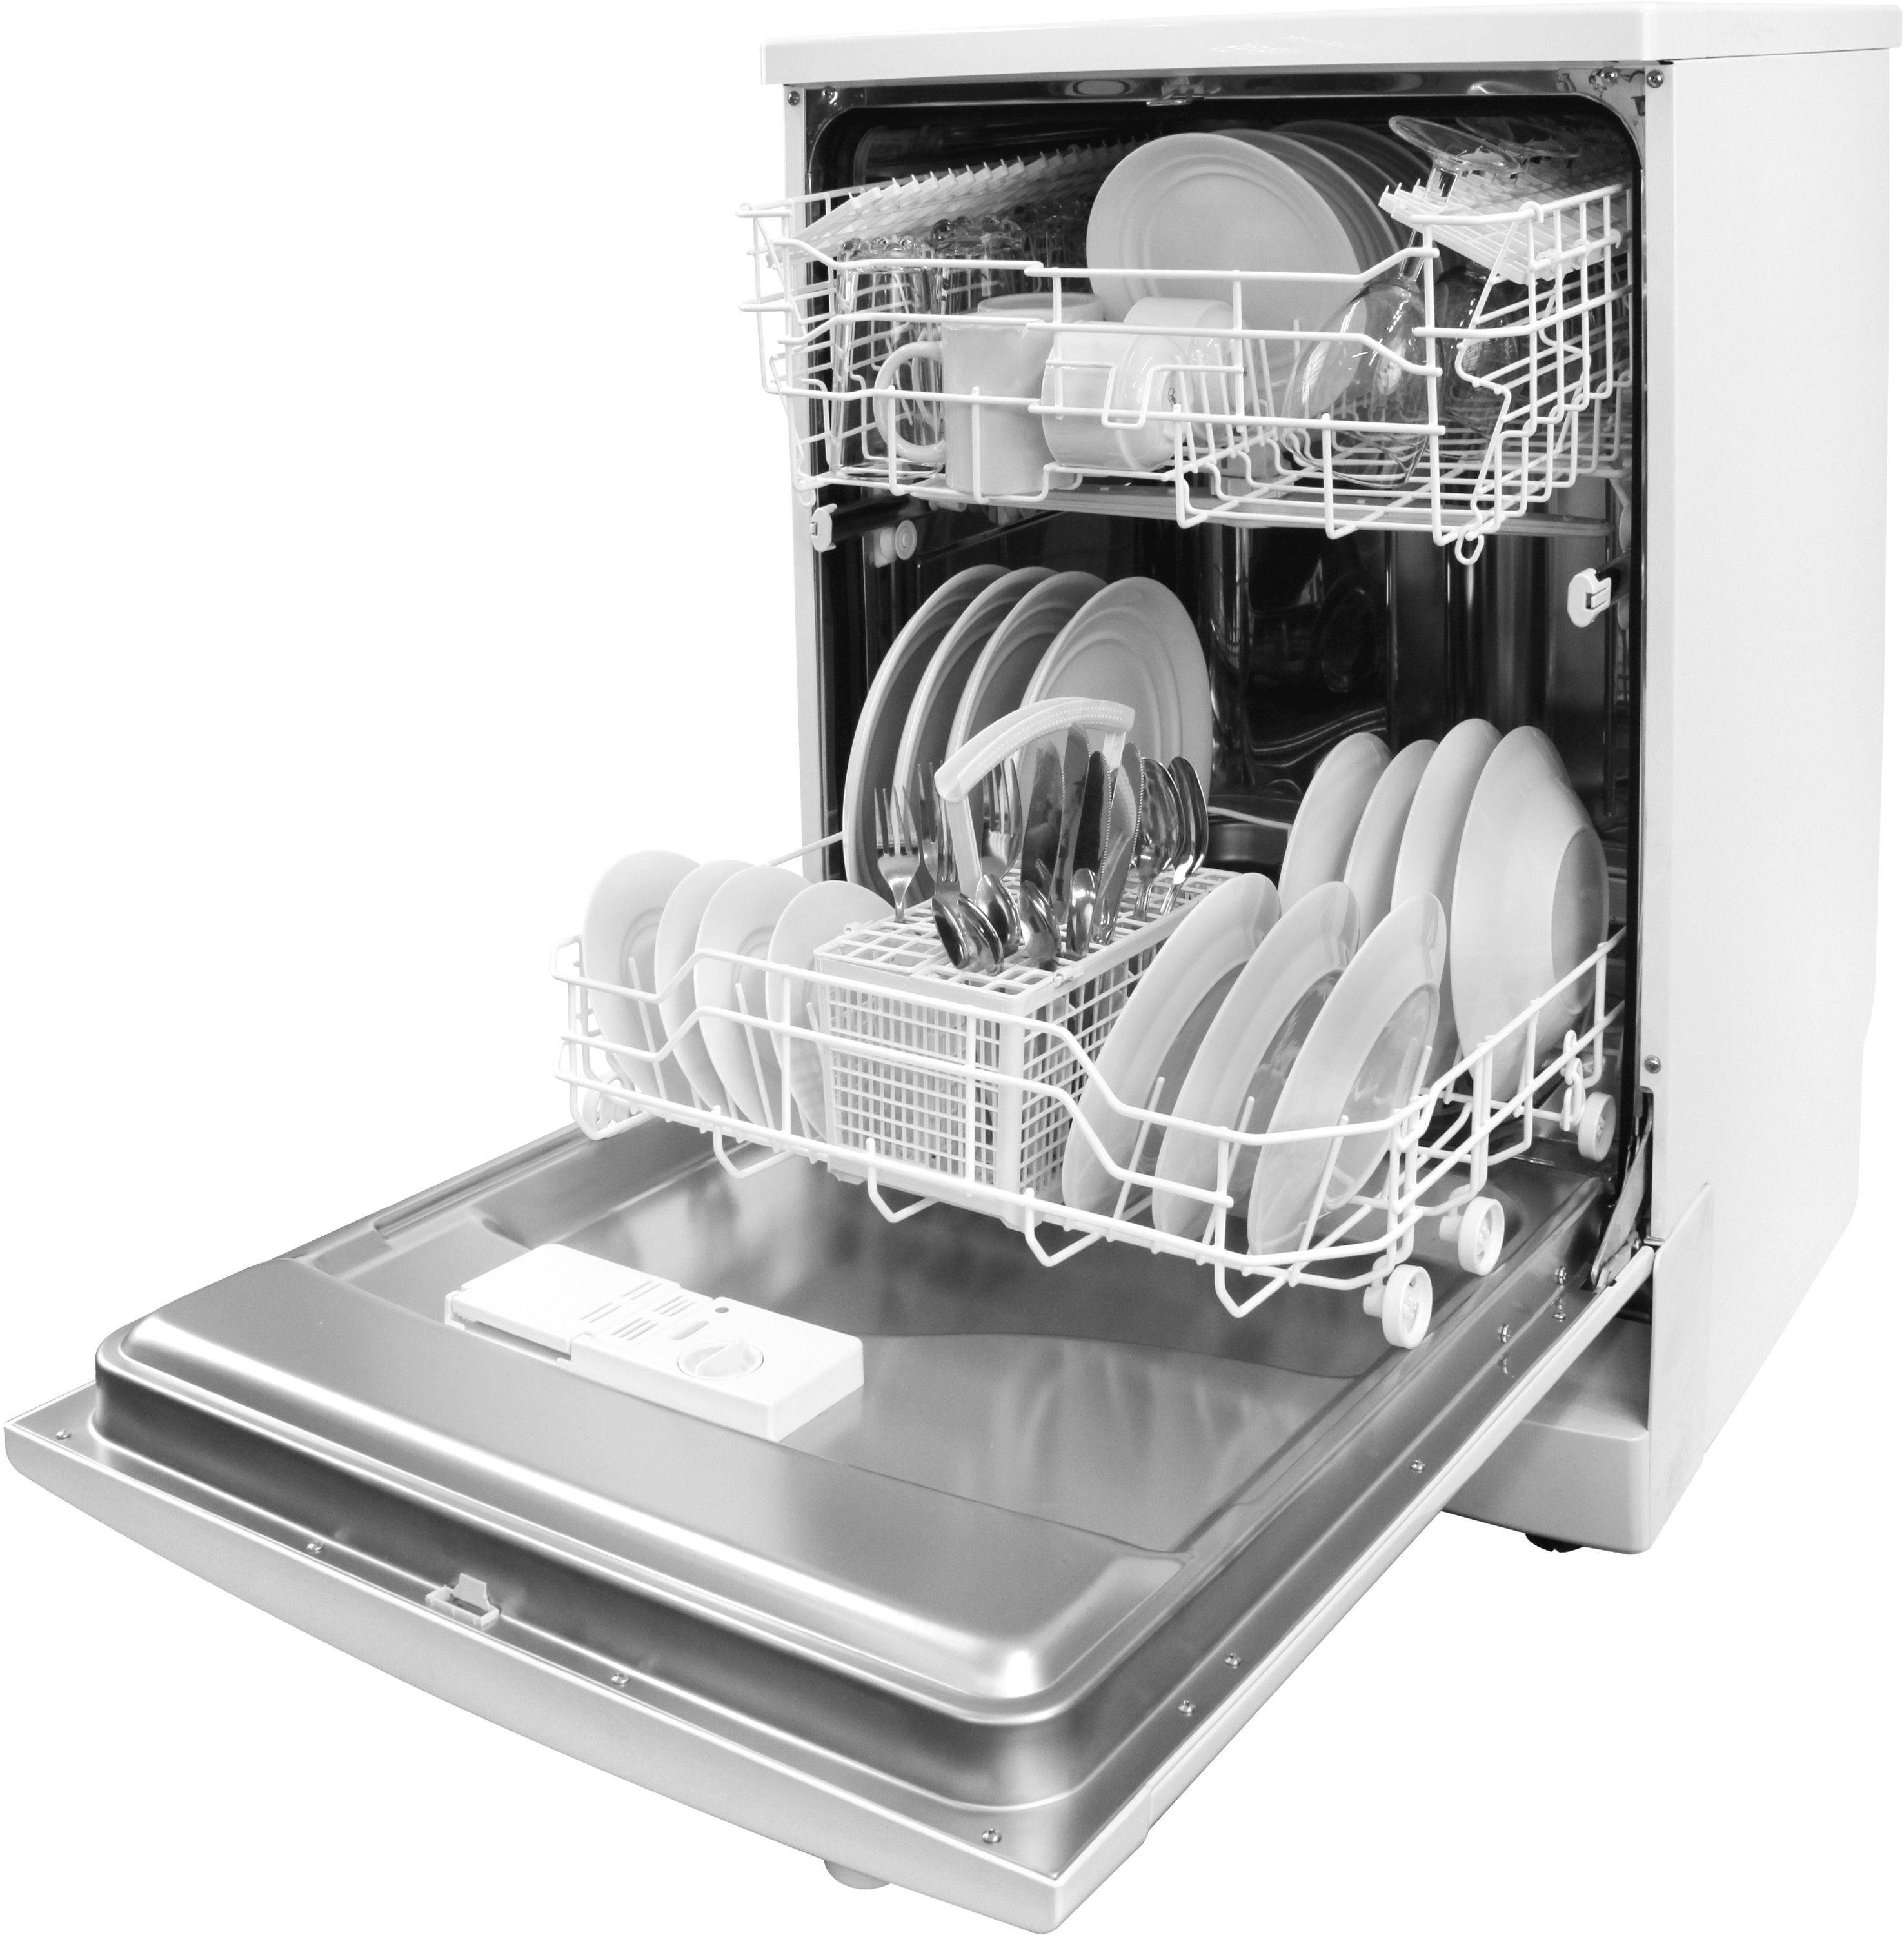 Первое включение посудомоечной машины. Посудомоечная машина Electrolux ESF 43020. Посудомоечная машина Whirlpool ikea 2006. Electrolux ESF 8000w. Посудомоечной машины Electrolux rd110.